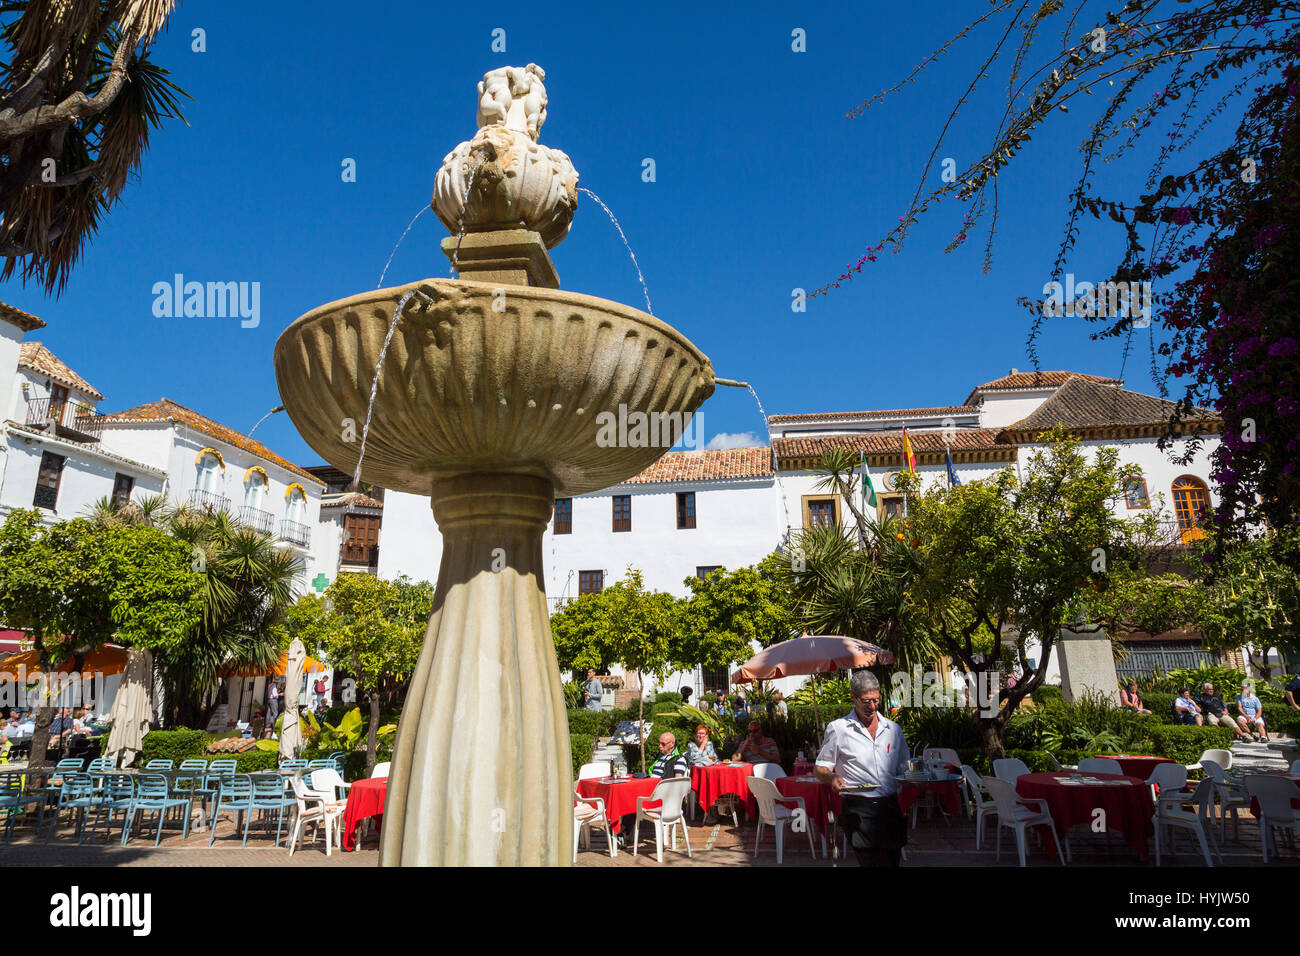 Fontana con acqua in Plaza Los Naranjos, centro storico, Marbella. Provincia di Malaga Costa del Sol. Andalusia Spagna meridionale, Europa Foto Stock